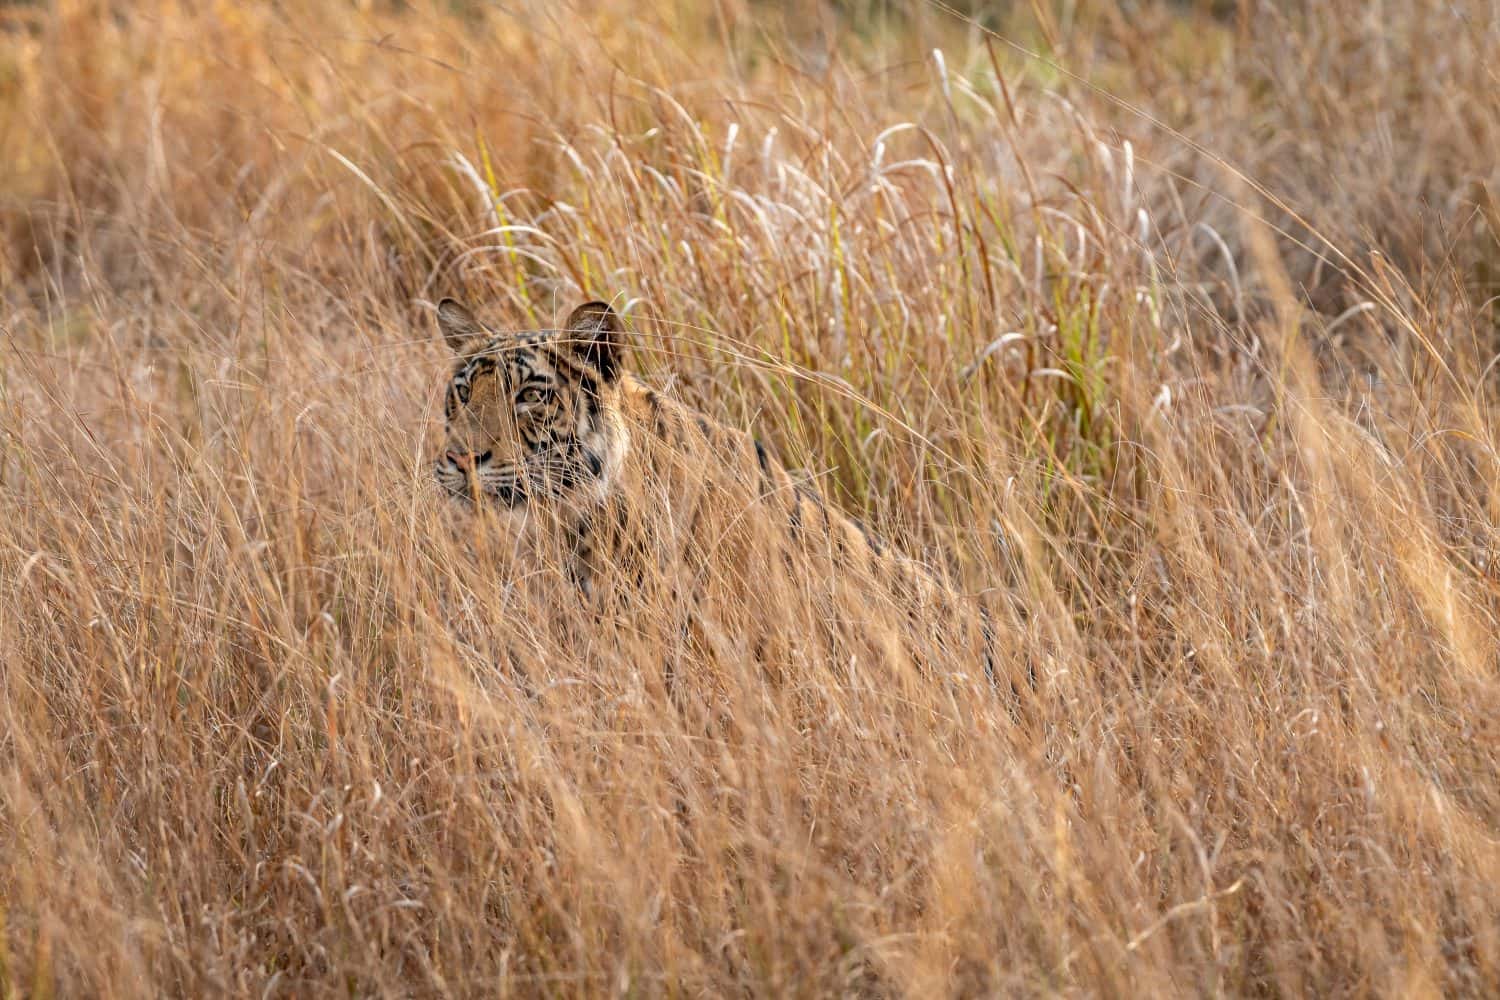 Indian wild female bengal tiger or panthera tigris tigris camouflage in grass at bandhavgarh national park forest madhya pradesh india asia